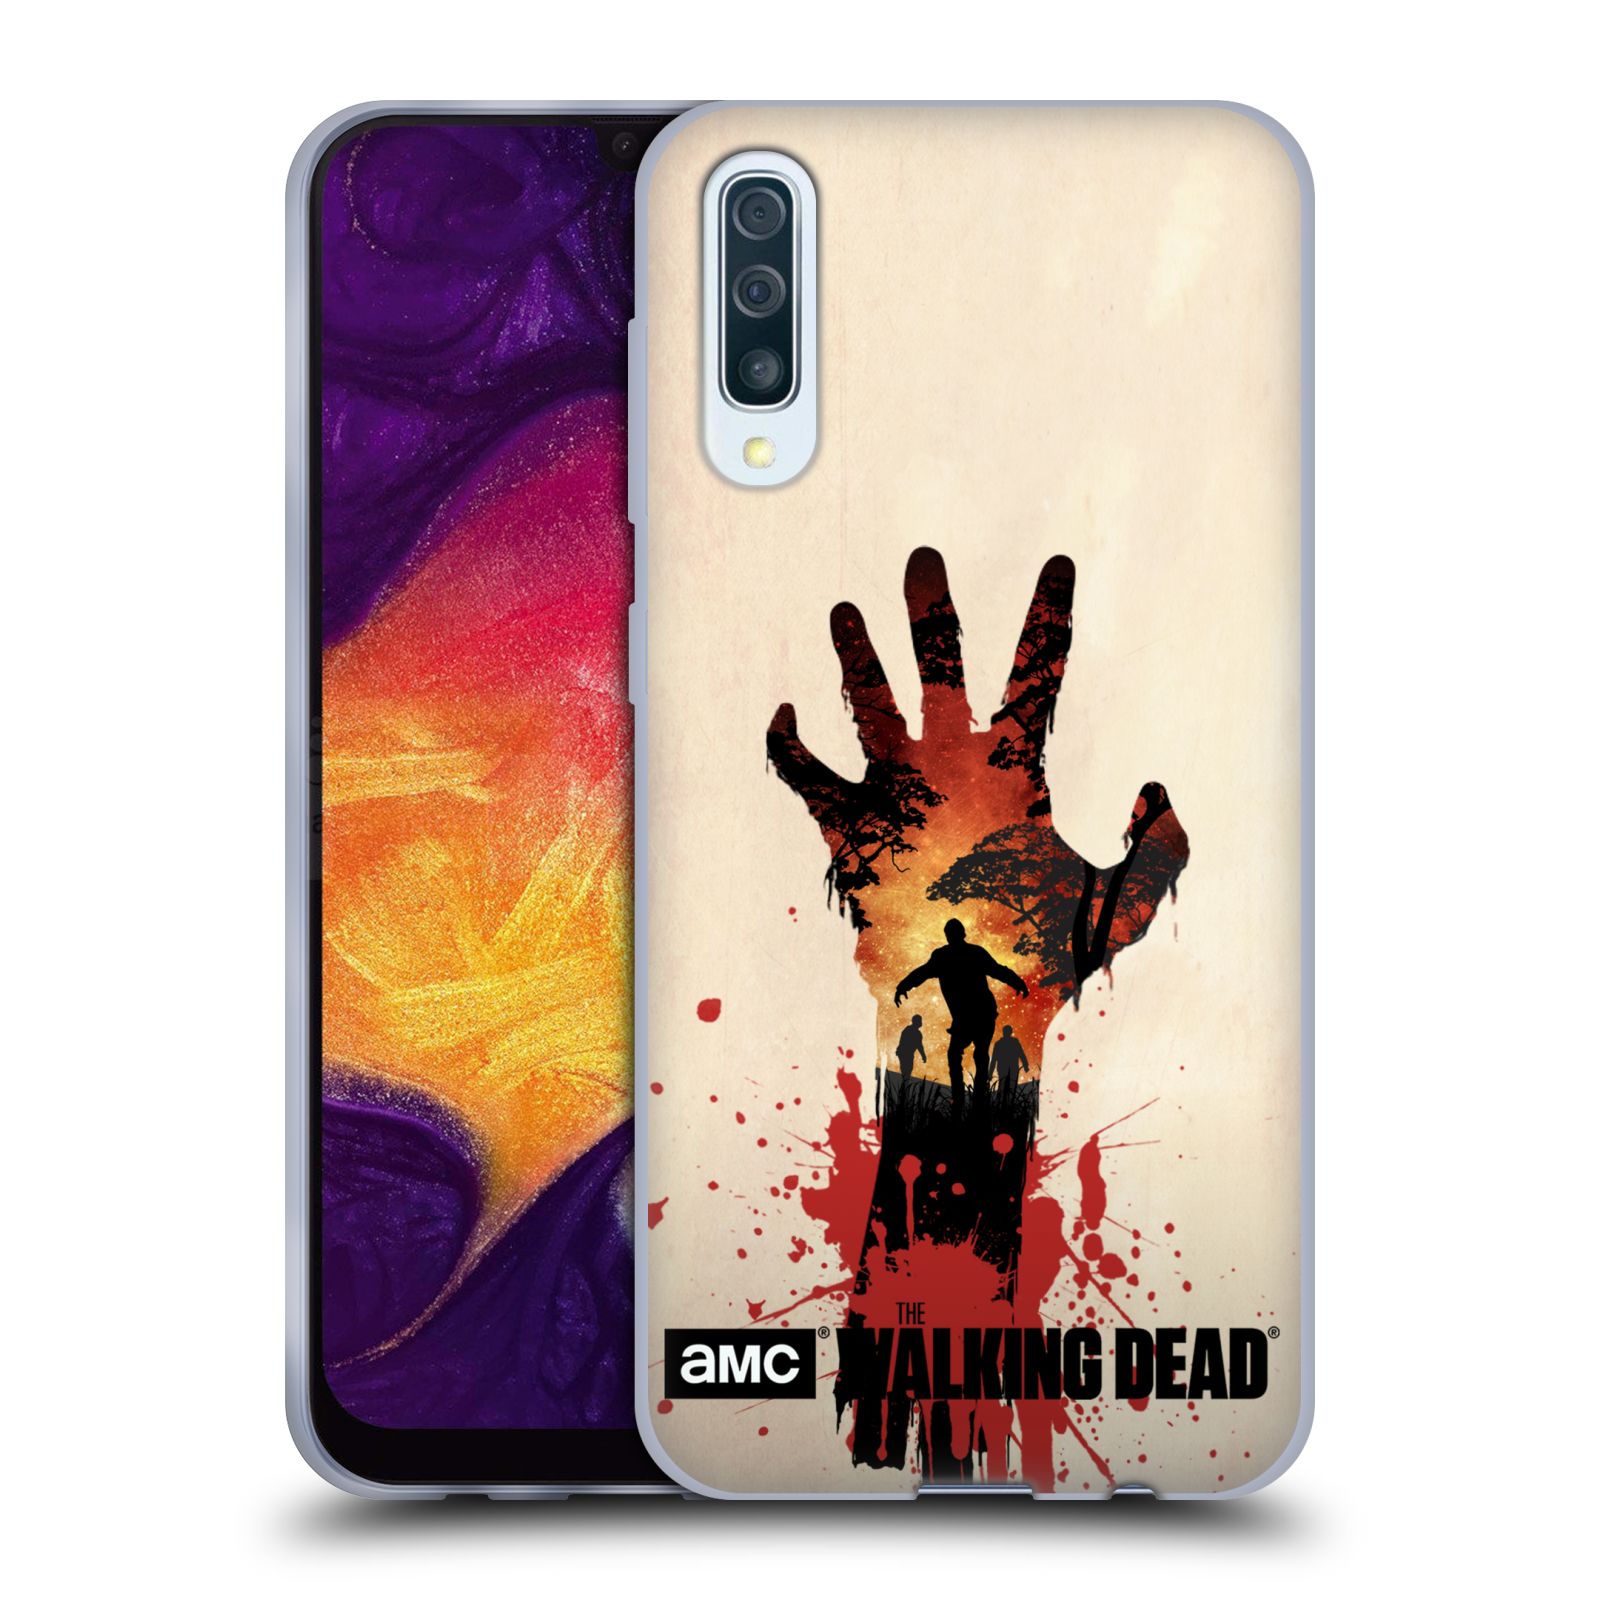 Silikonové pouzdro na mobil Samsung Galaxy A50 / A30s - Head Case - Živí mrtví - Ruka (Silikonový kryt, obal, pouzdro na mobilní telefon Samsung Galaxy A50 / A30s z roku 2019 s motivem Živí mrtví - Ruka)